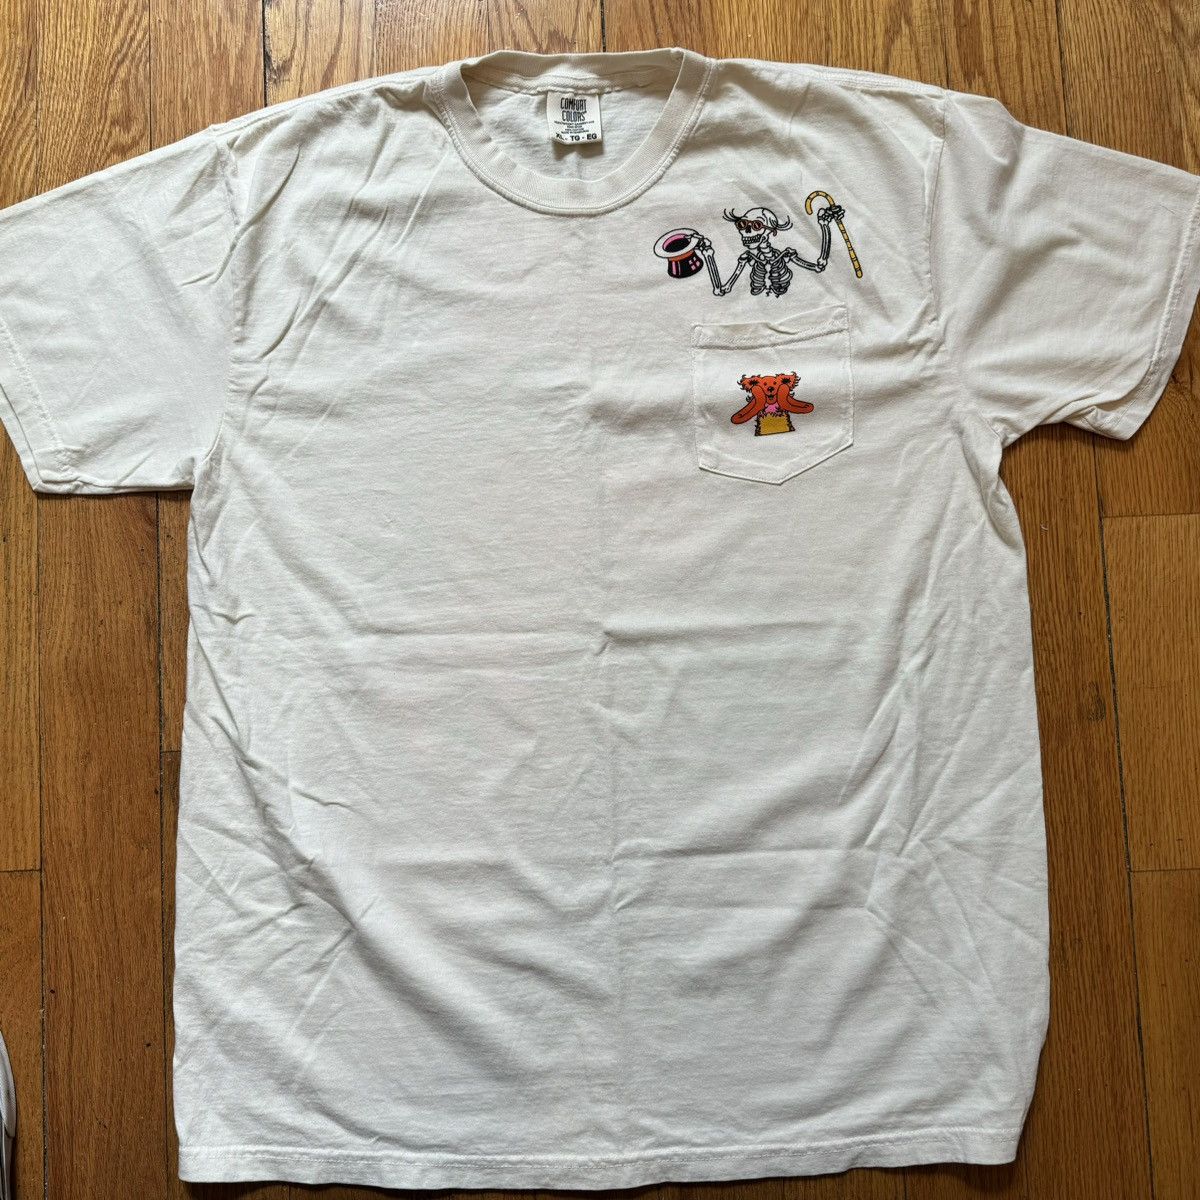 Coppertone Sunscreen Shirt Promo T Shirt Size Large Men's White Retro